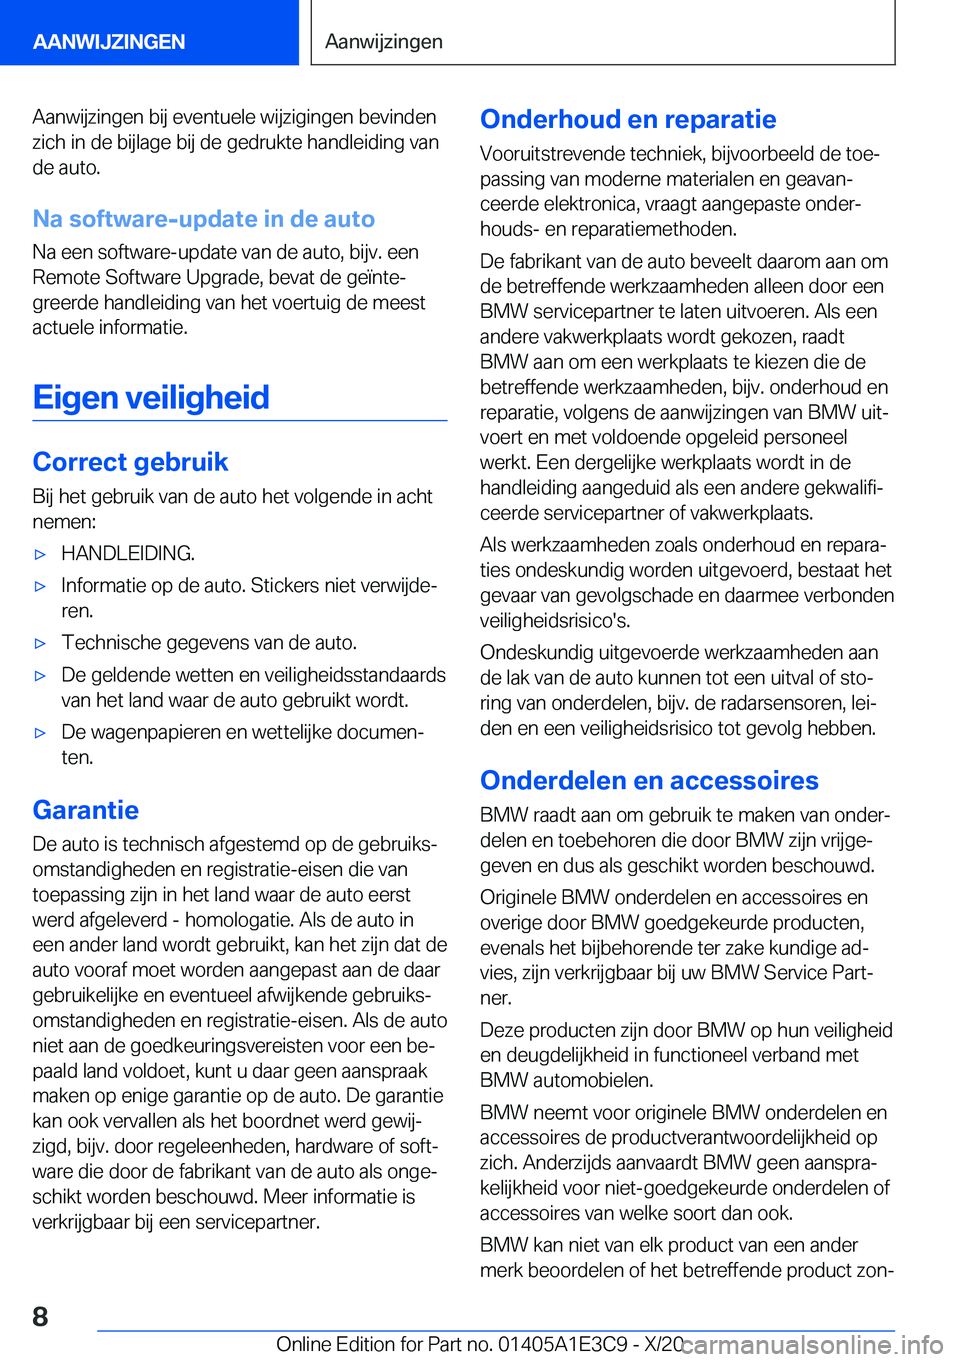 BMW M4 2021  Instructieboekjes (in Dutch) �A�a�n�w�i�j�z�i�n�g�e�n��b�i�j��e�v�e�n�t�u�e�l�e��w�i�j�z�i�g�i�n�g�e�n��b�e�v�i�n�d�e�n�z�i�c�h��i�n��d�e��b�i�j�l�a�g�e��b�i�j��d�e��g�e�d�r�u�k�t�e��h�a�n�d�l�e�i�d�i�n�g��v�a�n
�d�e�